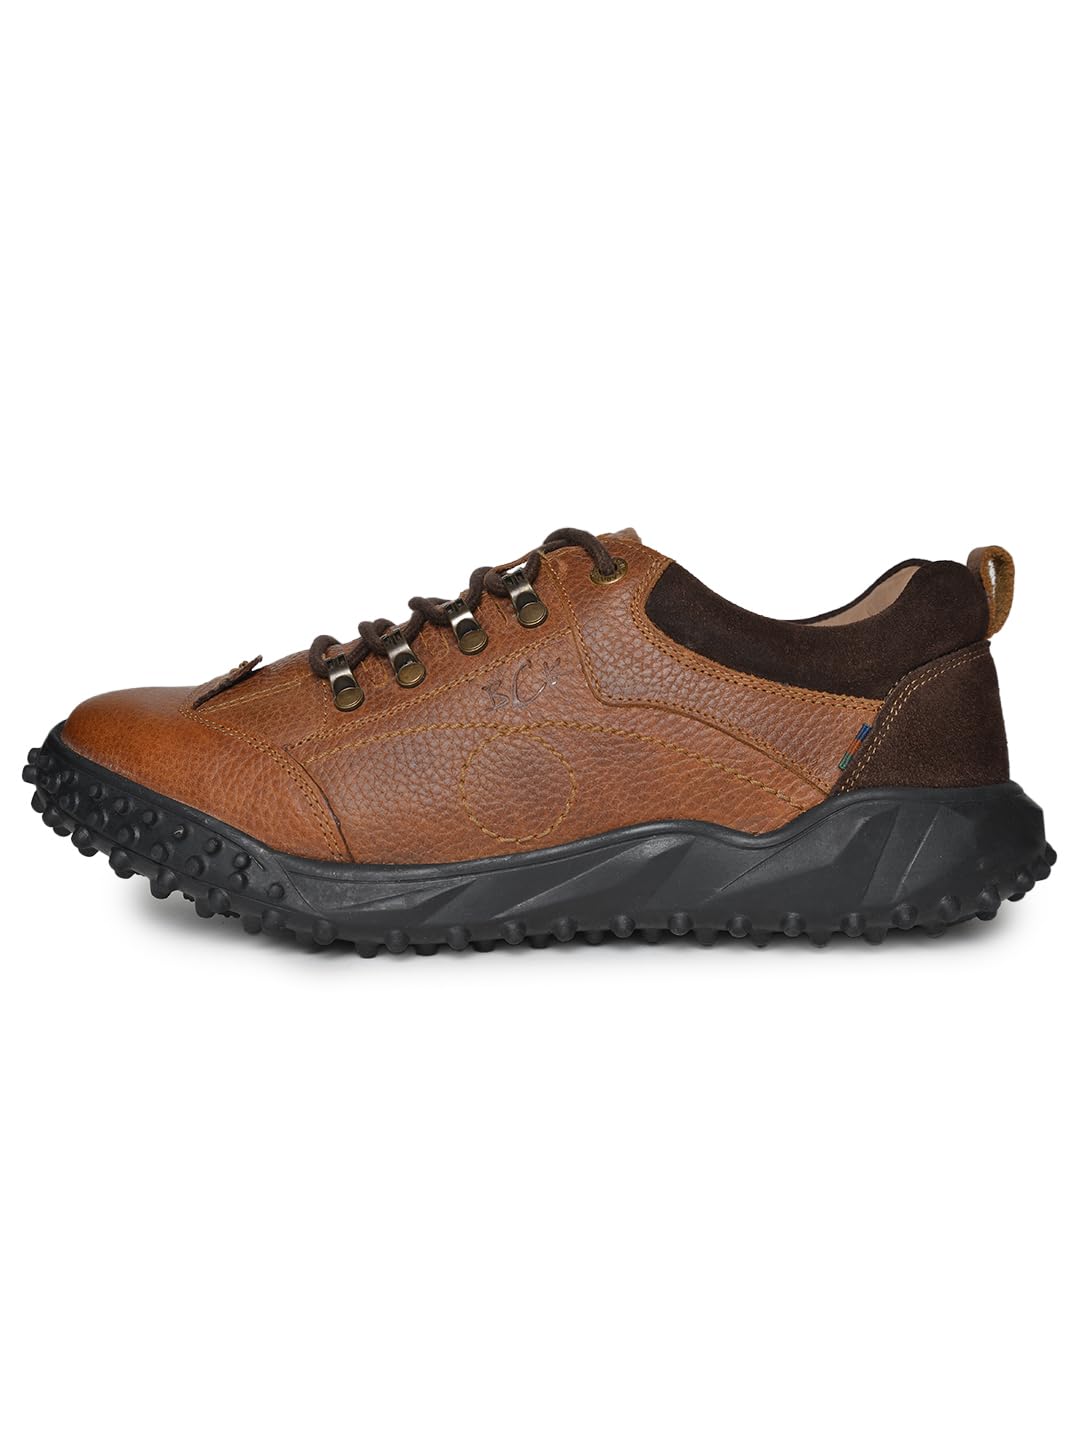 Buckaroo CORROLA Floter Mild Tan Casual Shoes for Mens 